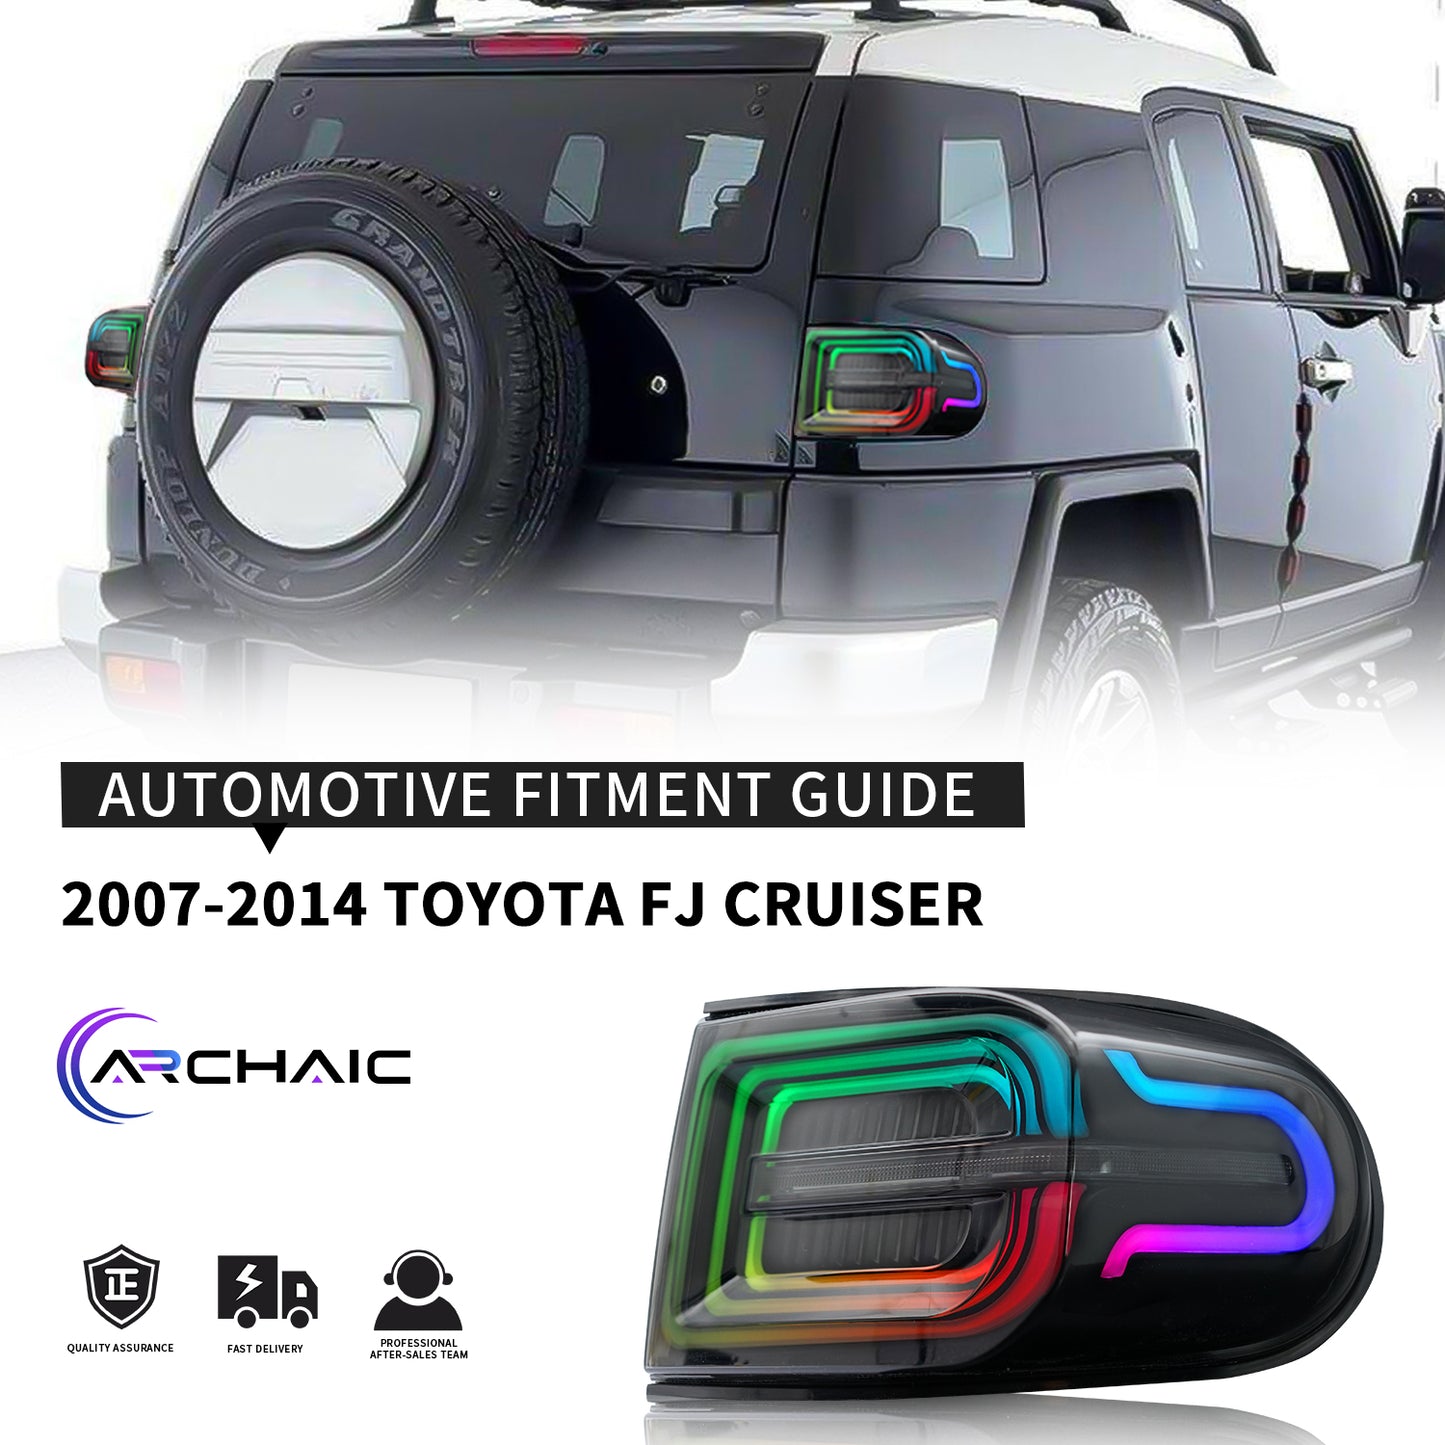 Full LED Tail Light Assembly For Toyota FJ Cruiser 2007-2021